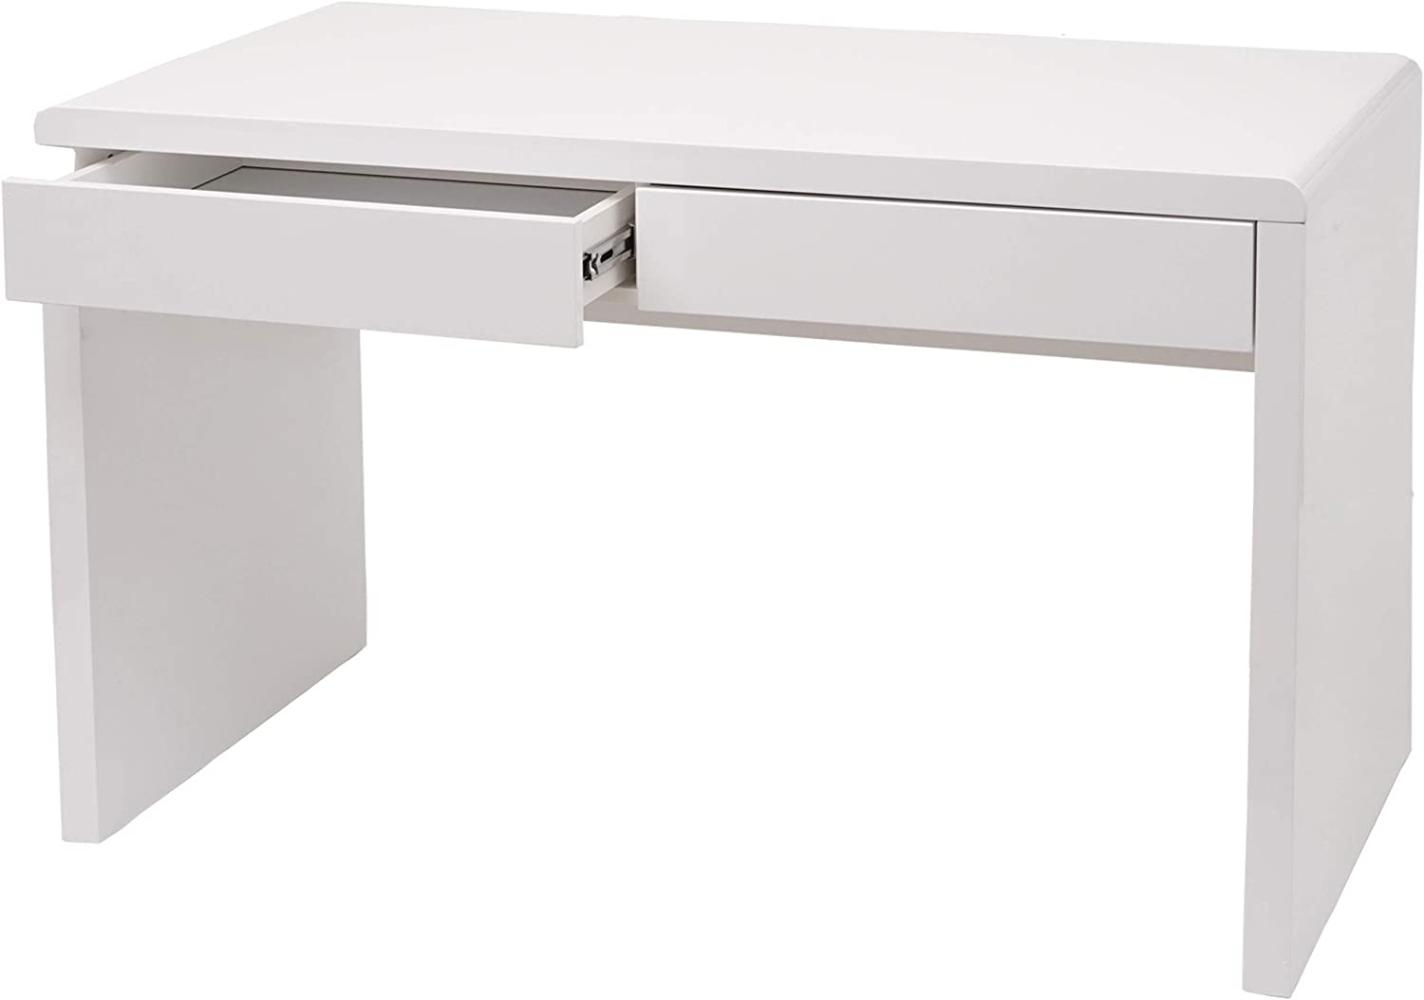 'HWC-G51' Schreibtisch mit 2 Schubladen, Hochglanz Weiß, 75 x 100 x 60 cm Bild 1